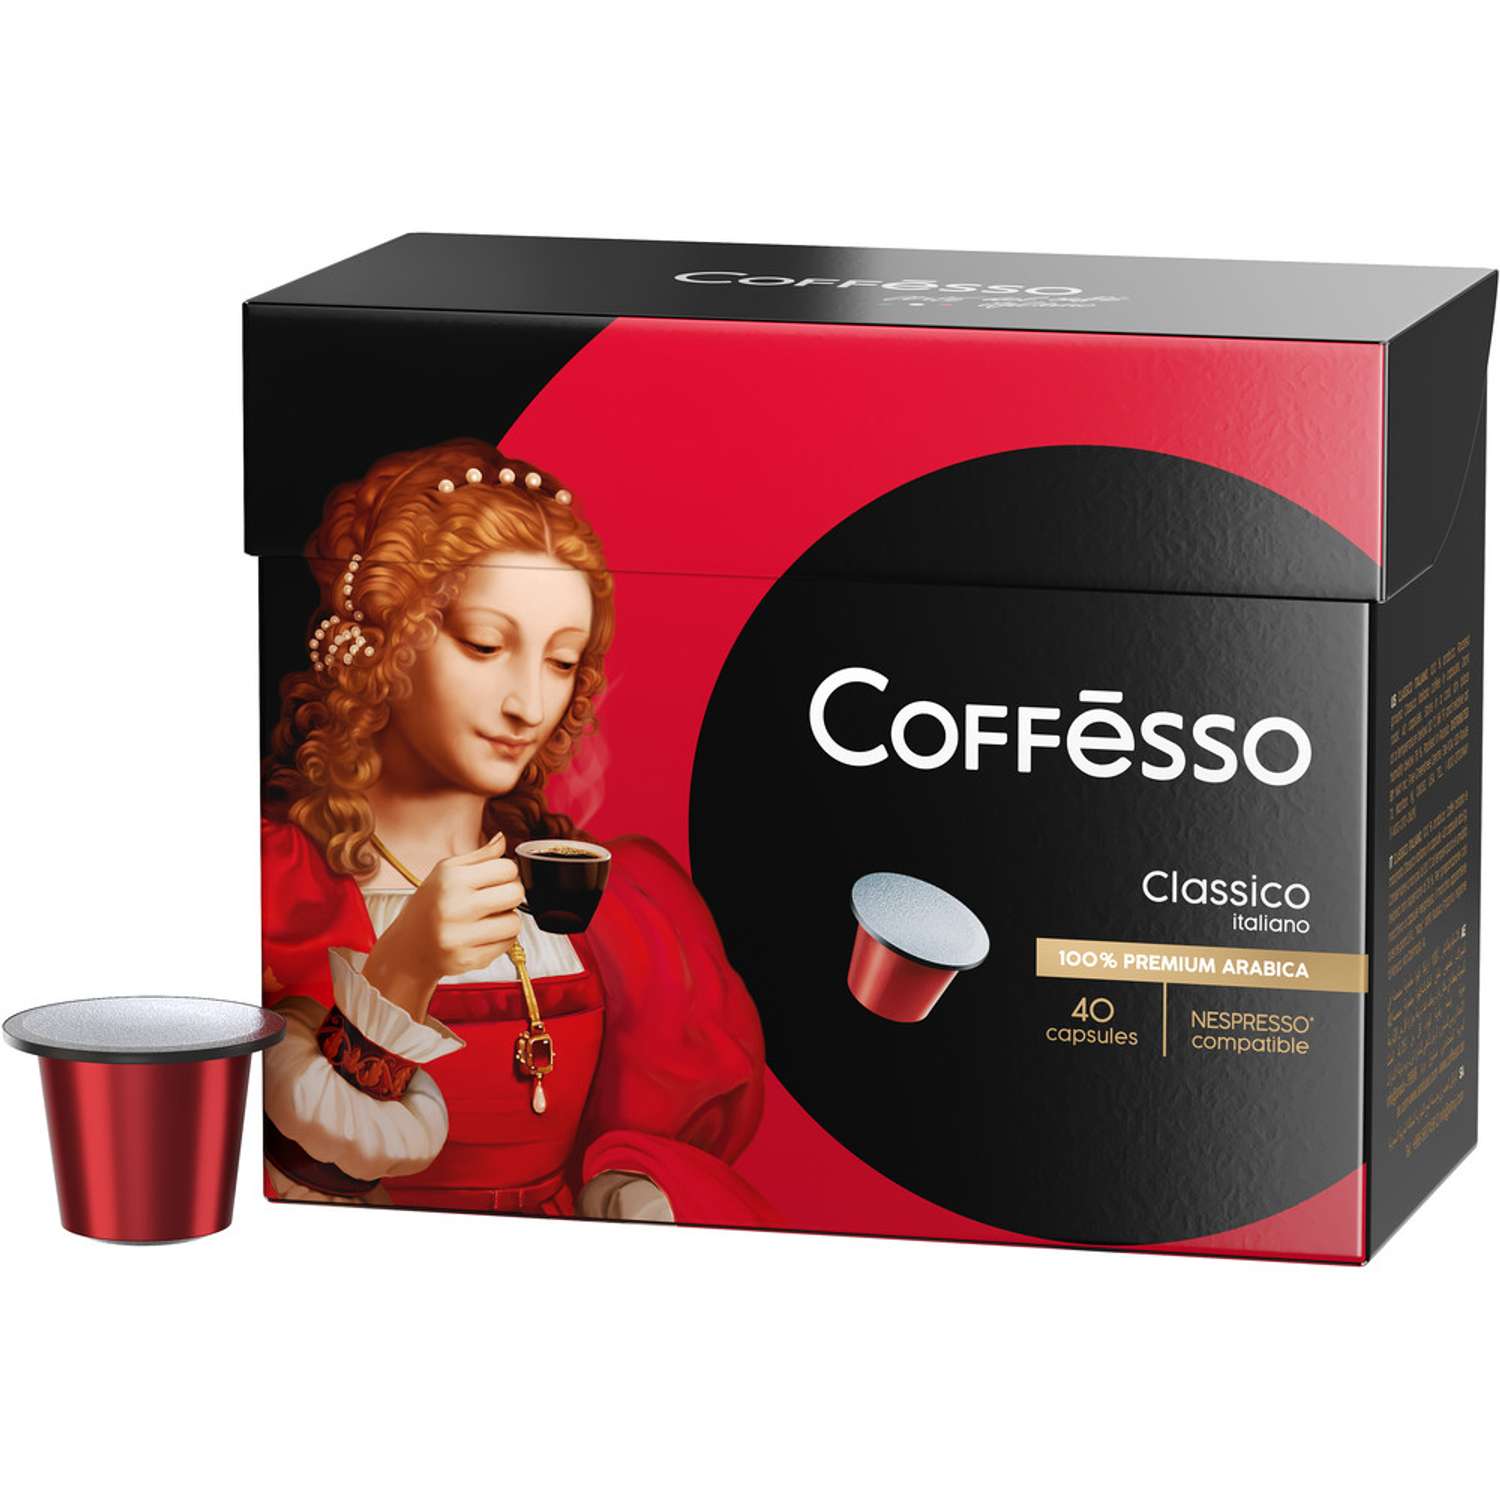 Кофе в капсулах Coffesso Classico Italiano 40 капсул по 5 г - фото 1